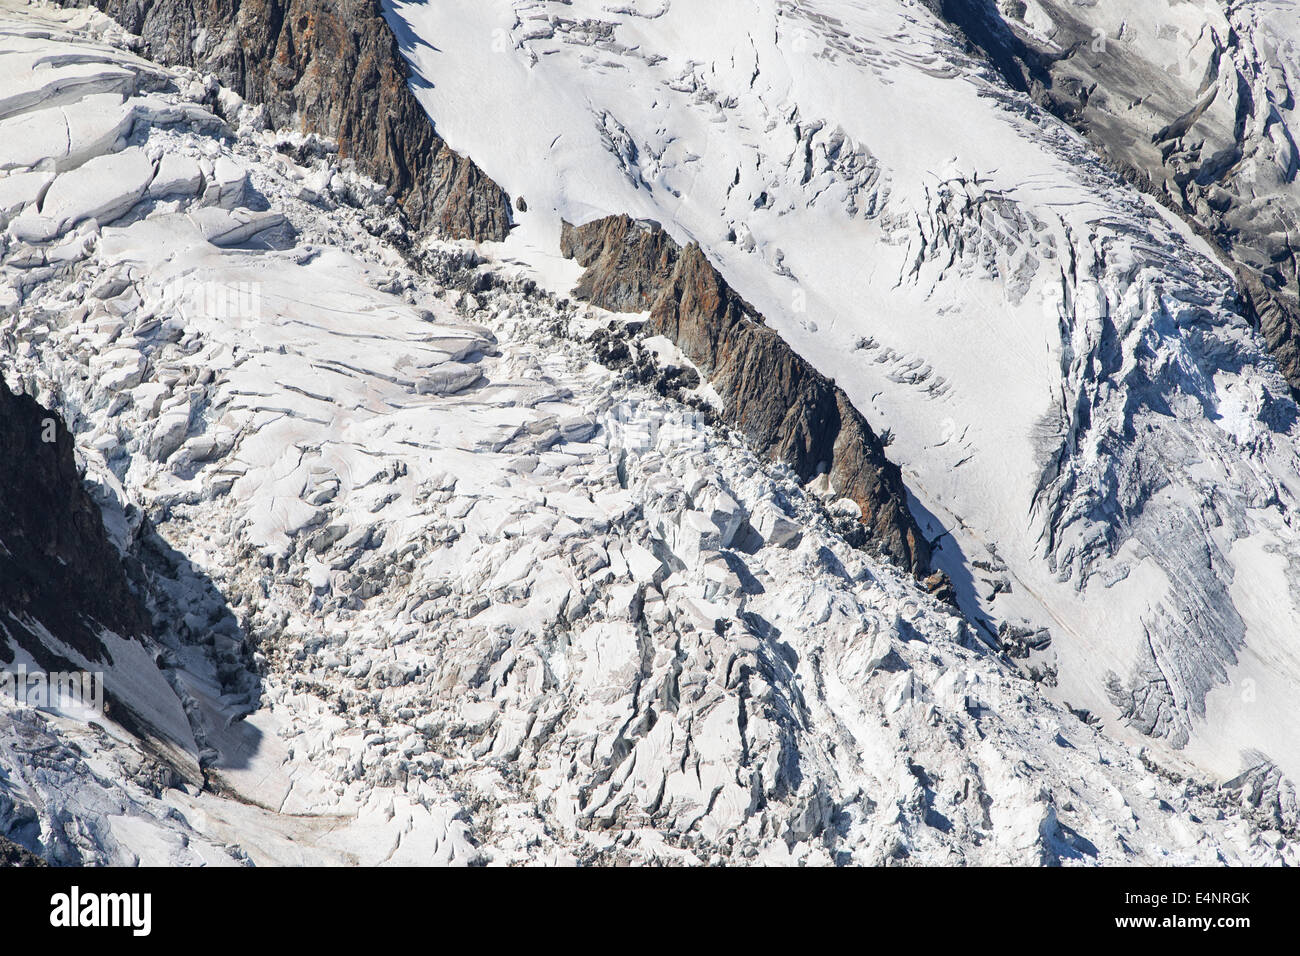 Seracchi da aggirare del Ghiacciaio Bossons sul massiccio del Monte Bianco, Francia. Foto Stock